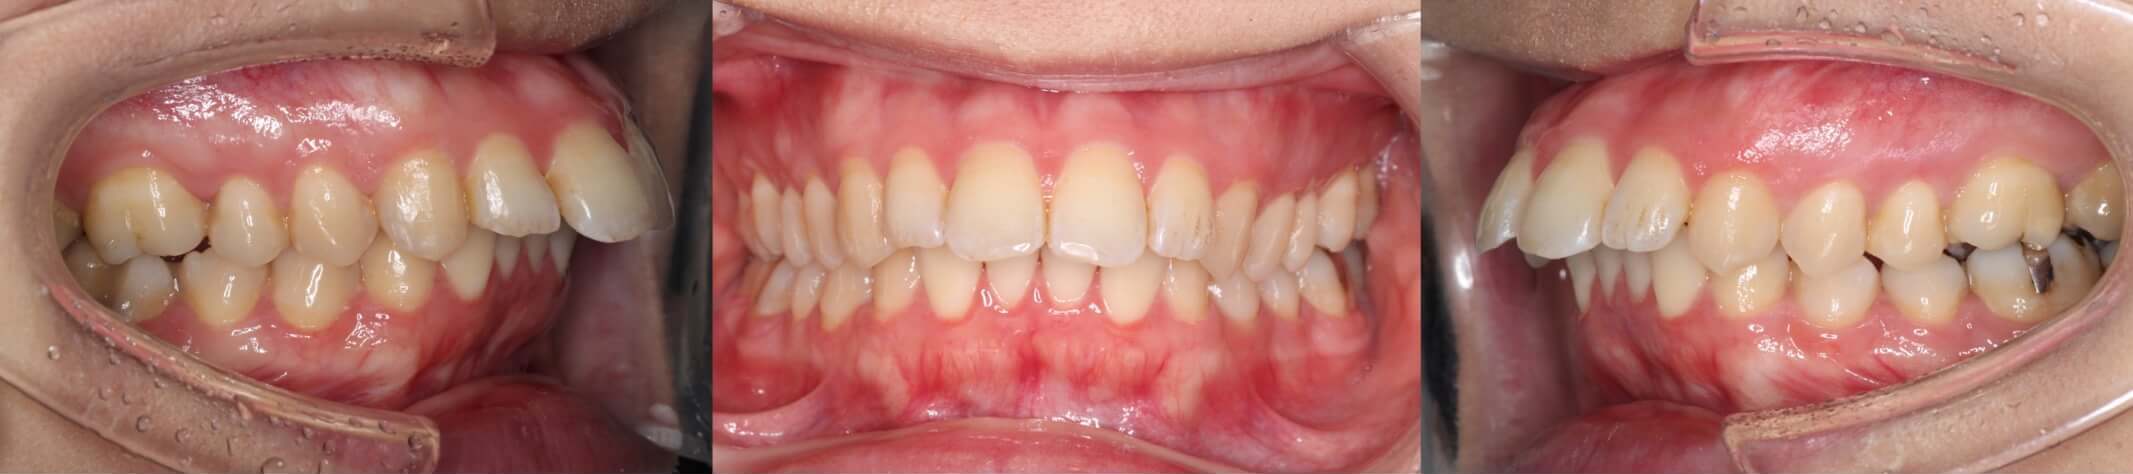 ハーフリンガル・出っ歯治療症例